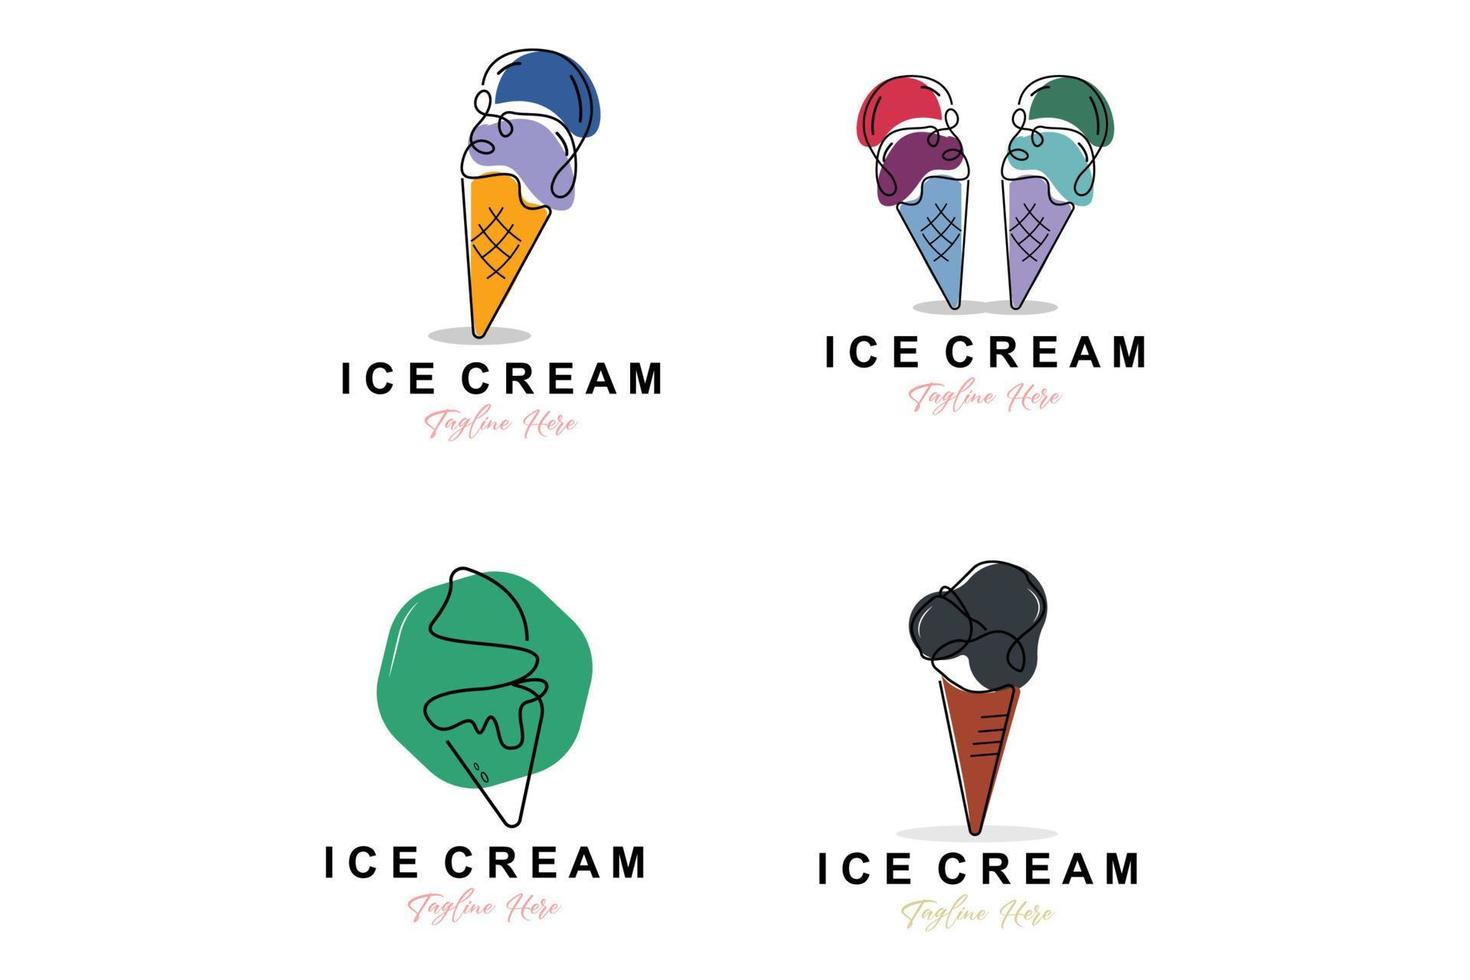 design de logotipo de sorvete, ilustração de comida fria e doce fresca, vetor favorito das crianças, marca de produto